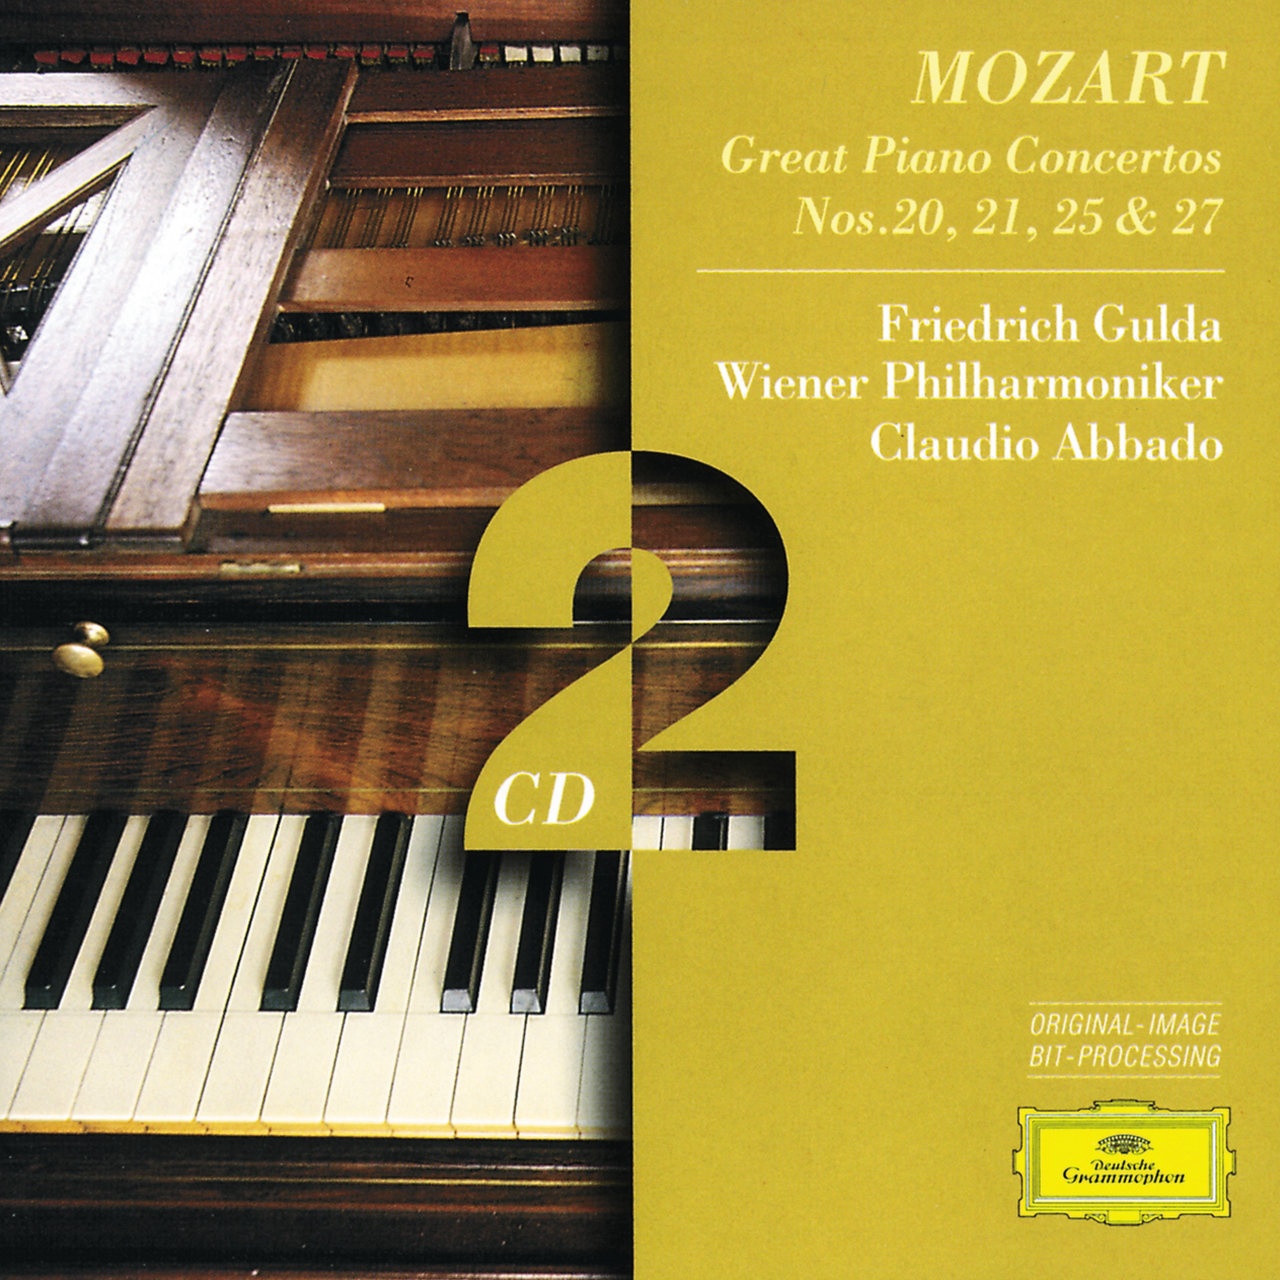 Mozart: Great Piano Concertos Nos. 20, 21, 25 & 27